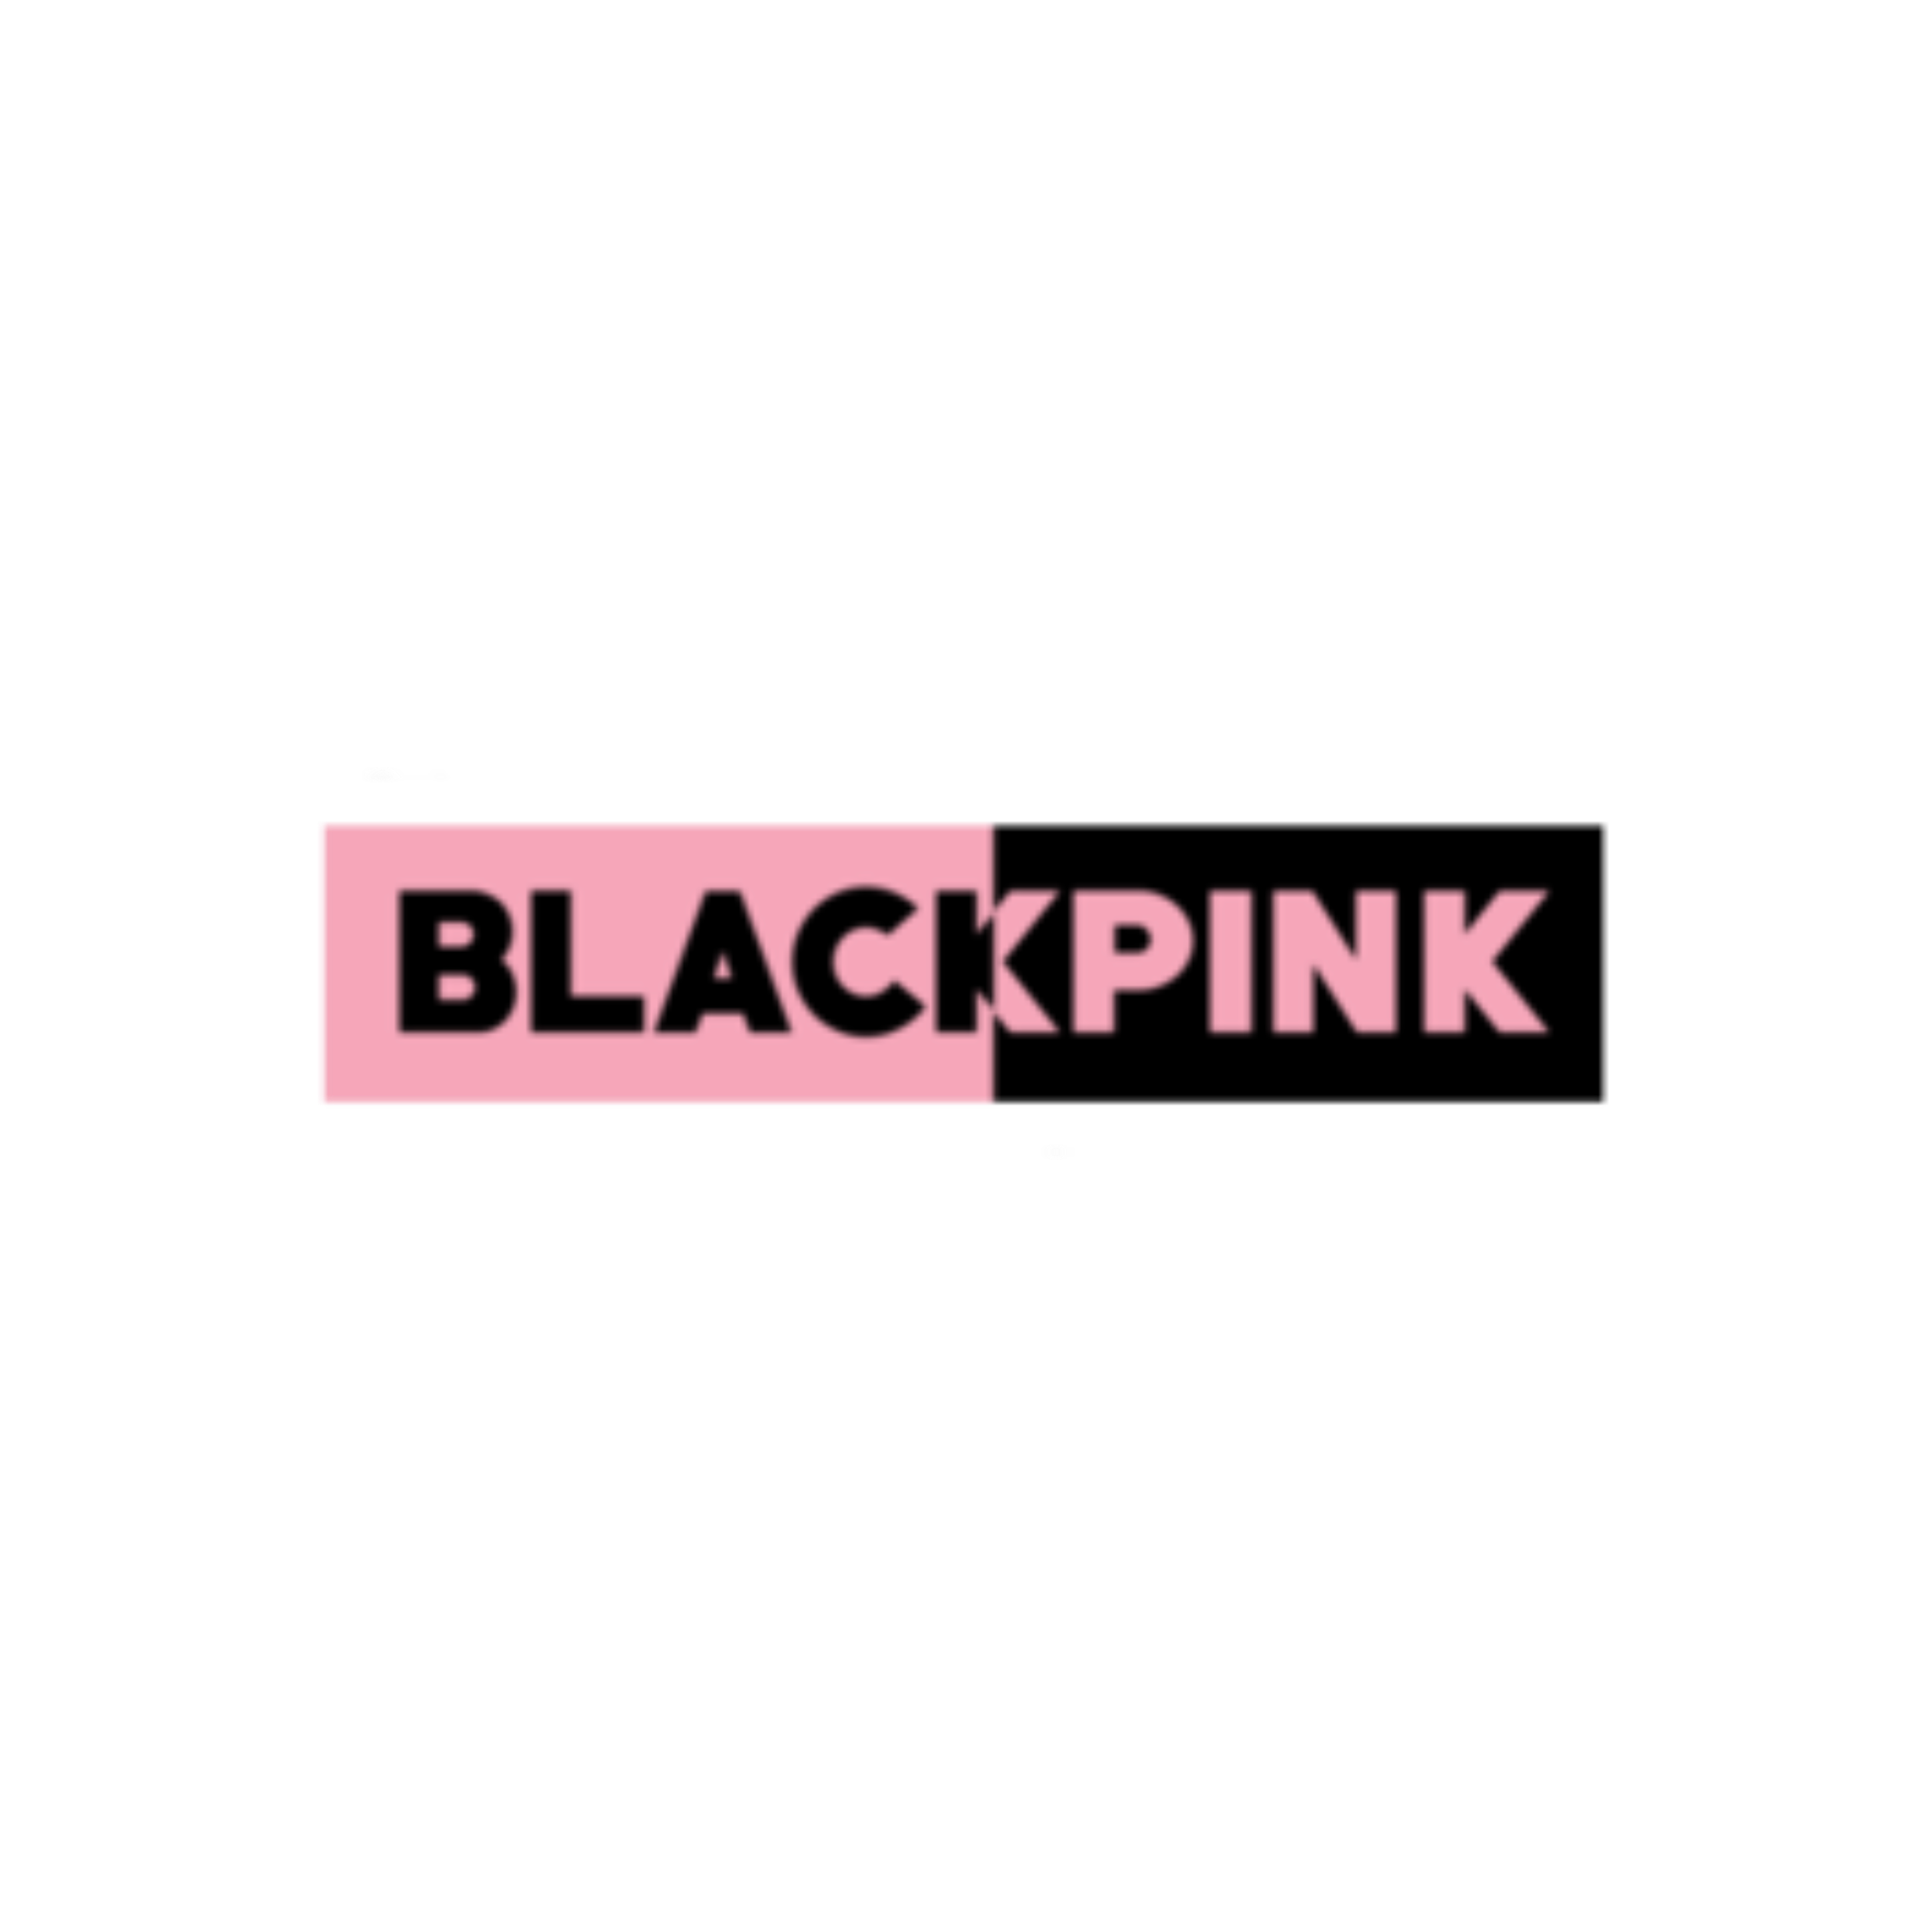 blackpink logo wallpaper